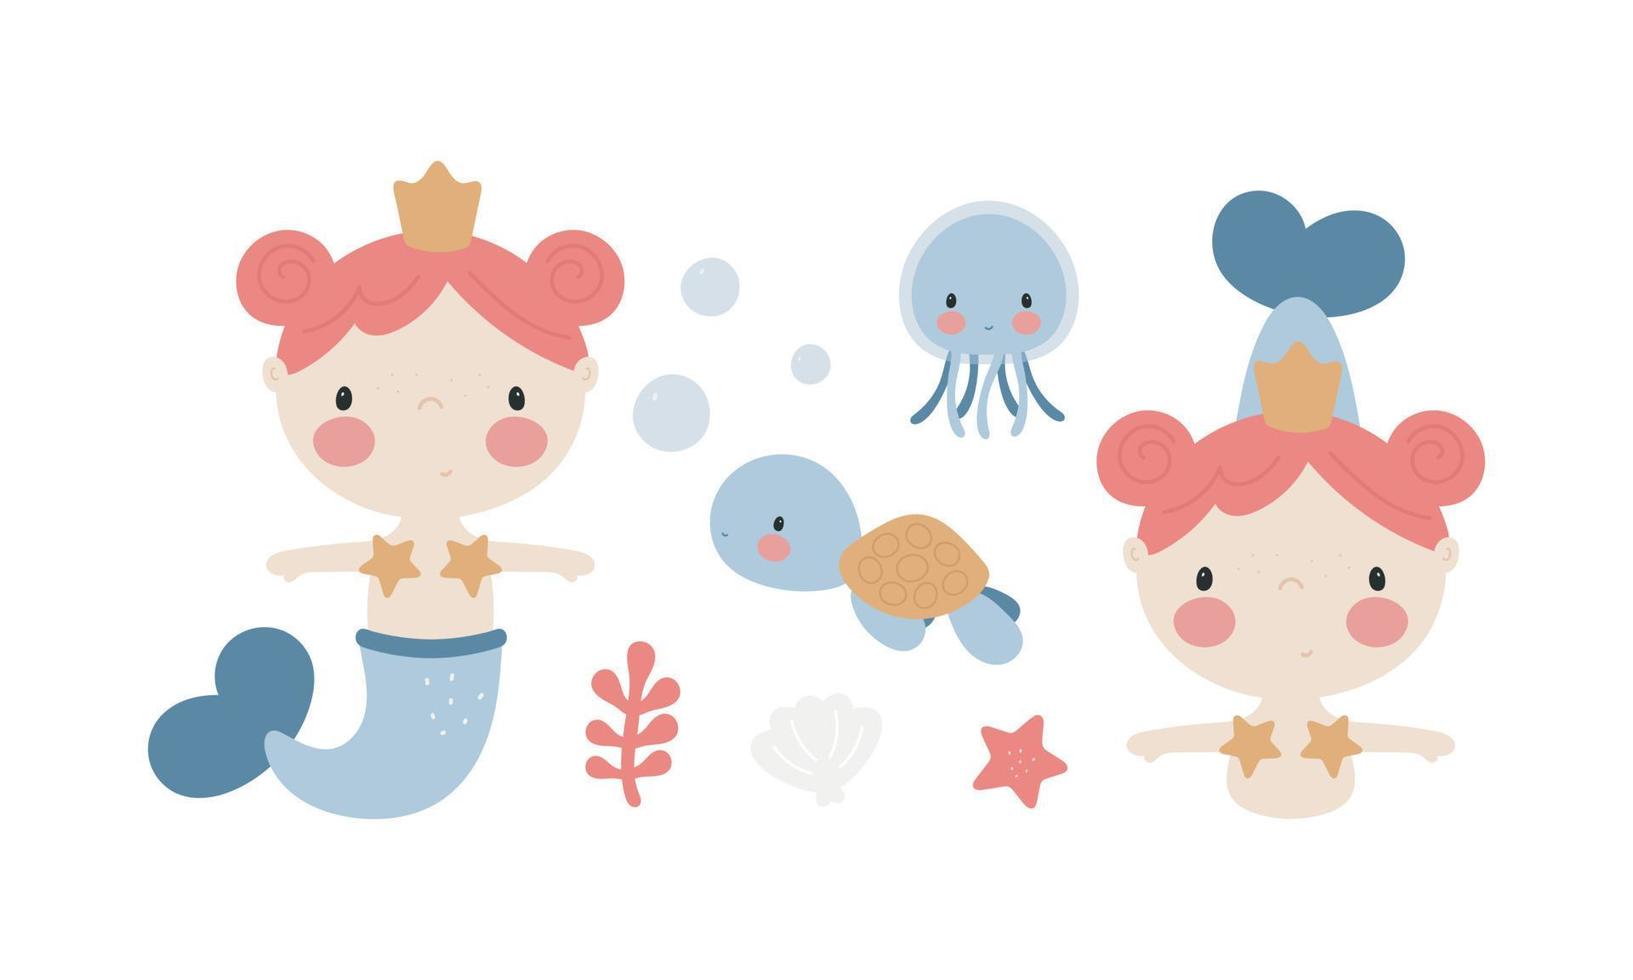 personajes marinos de dibujos animados. sirenita, medusa, tortuga marina, estrella de mar. bueno para invitaciones de baby shower, tarjetas de cumpleaños, pegatinas, impresiones, etc. vector